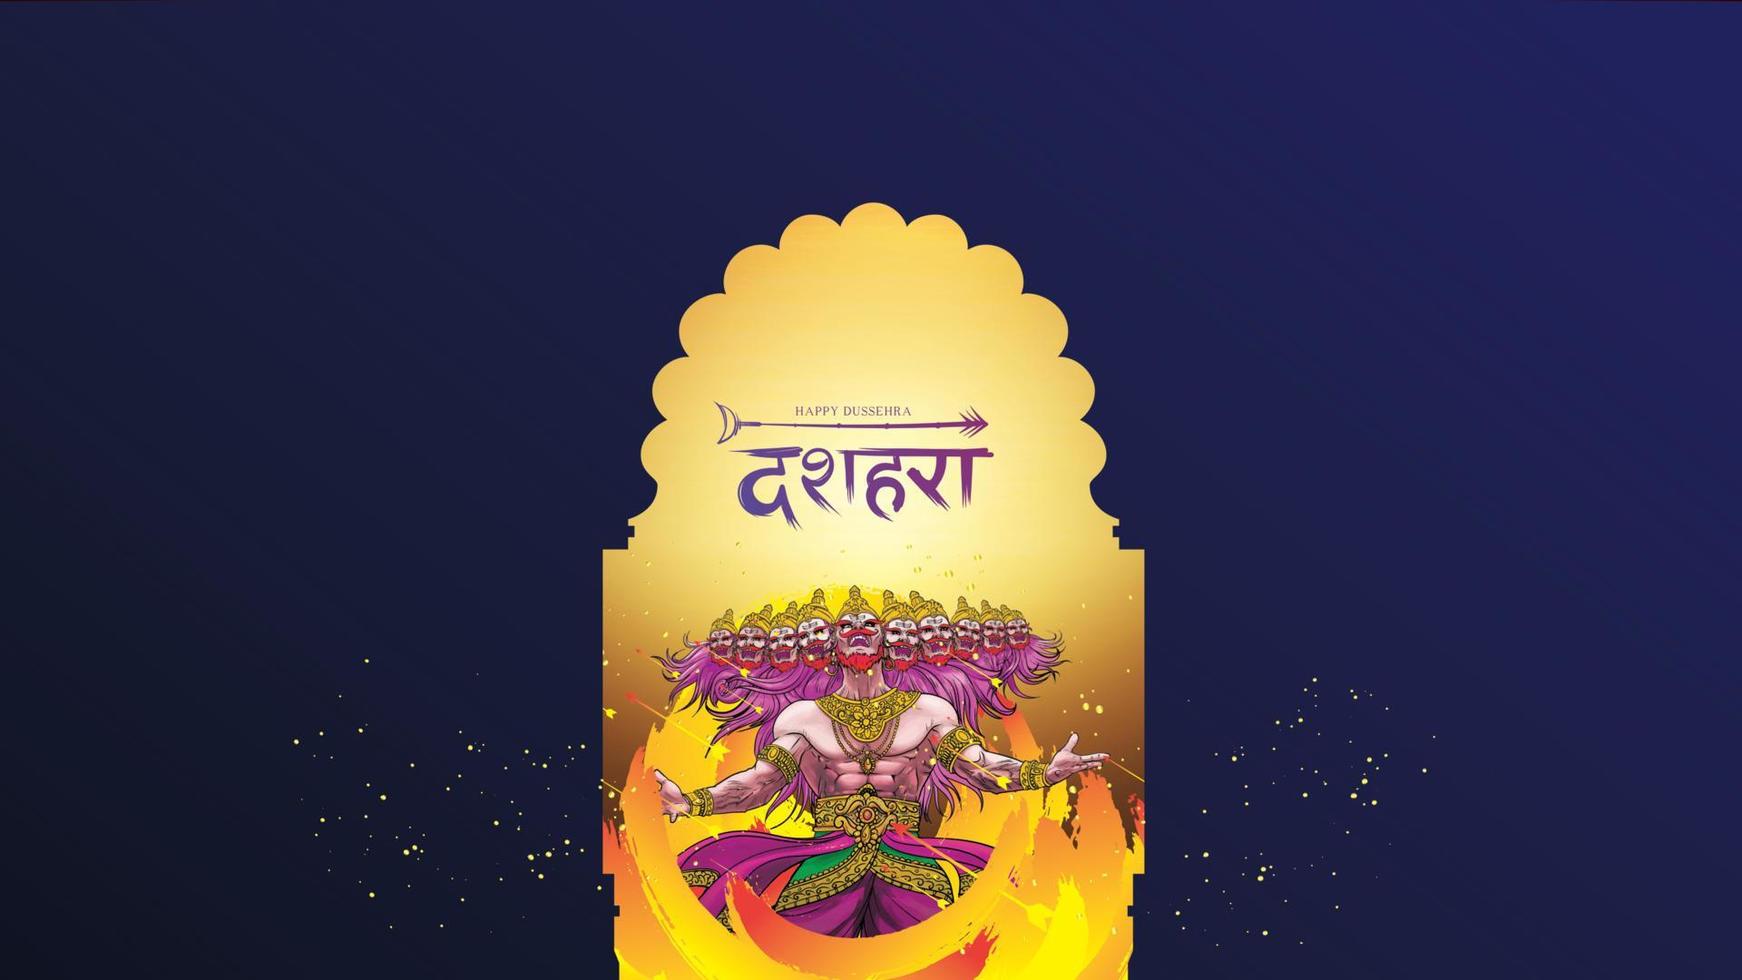 ilustração vetorial criativa do senhor rama matando ravana no festival de cartaz feliz dussehra navratri da índia. tradução dussehra vetor